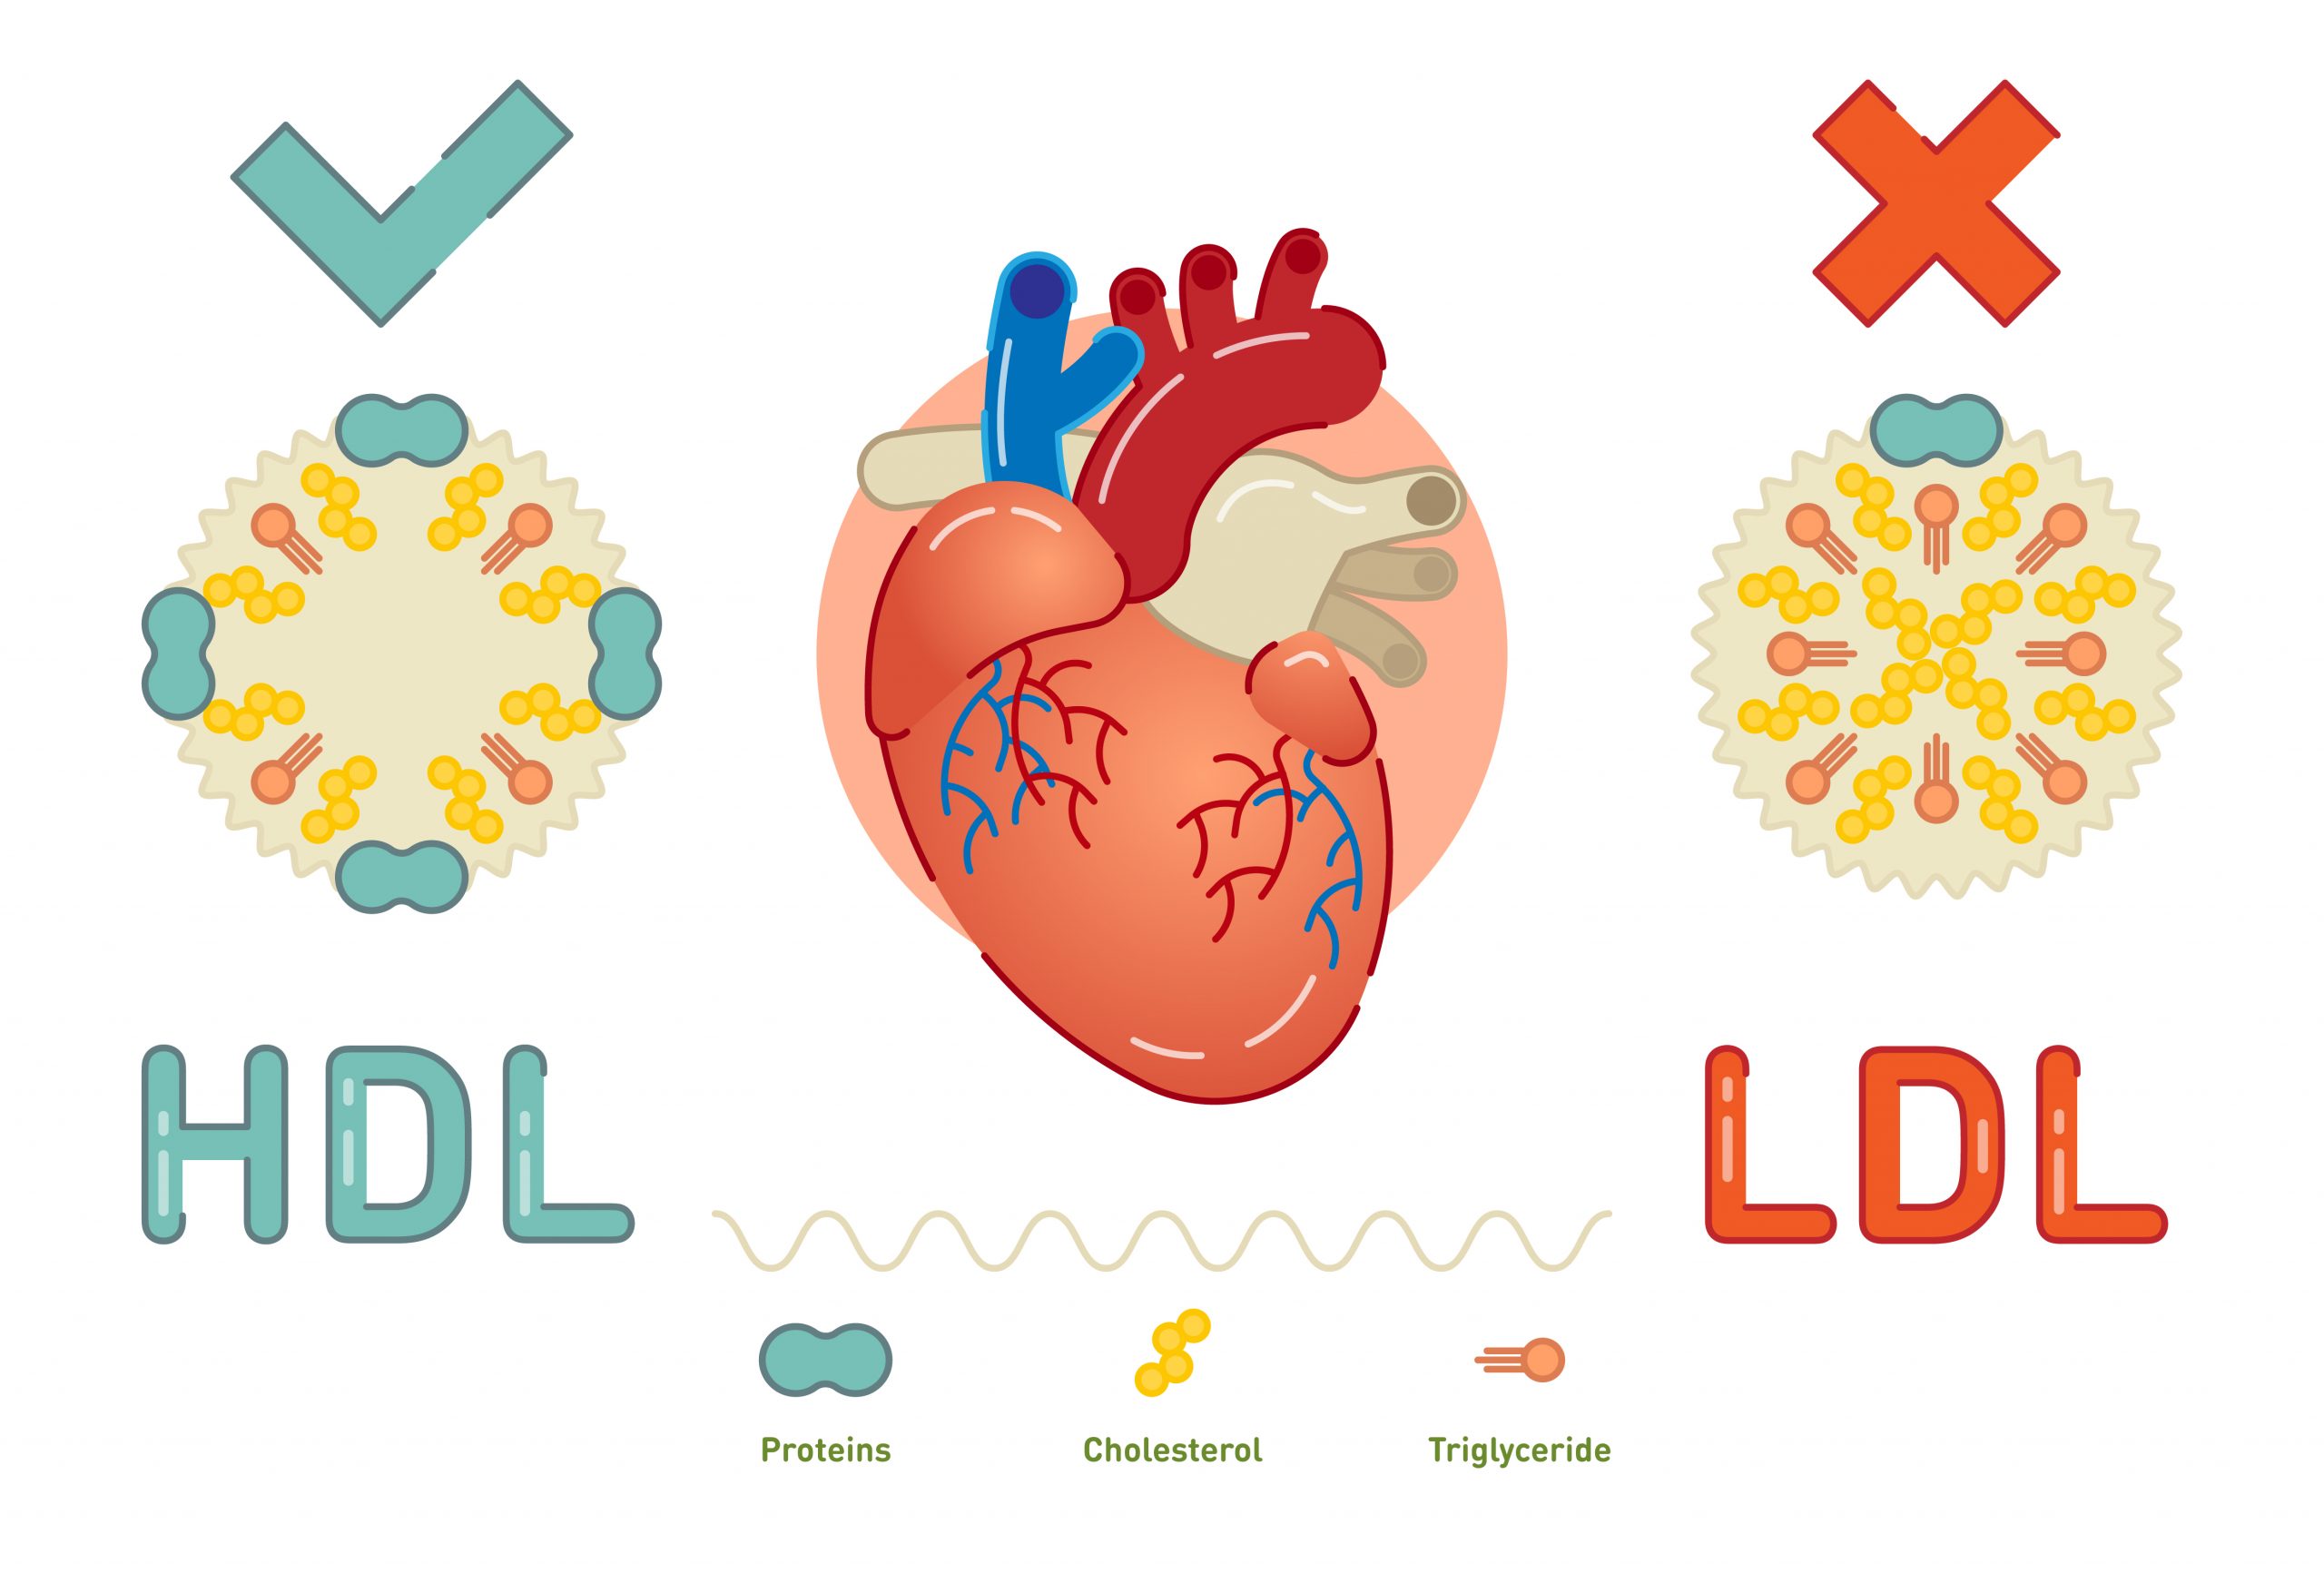 Diferencia entre trigliceridos y colesterol